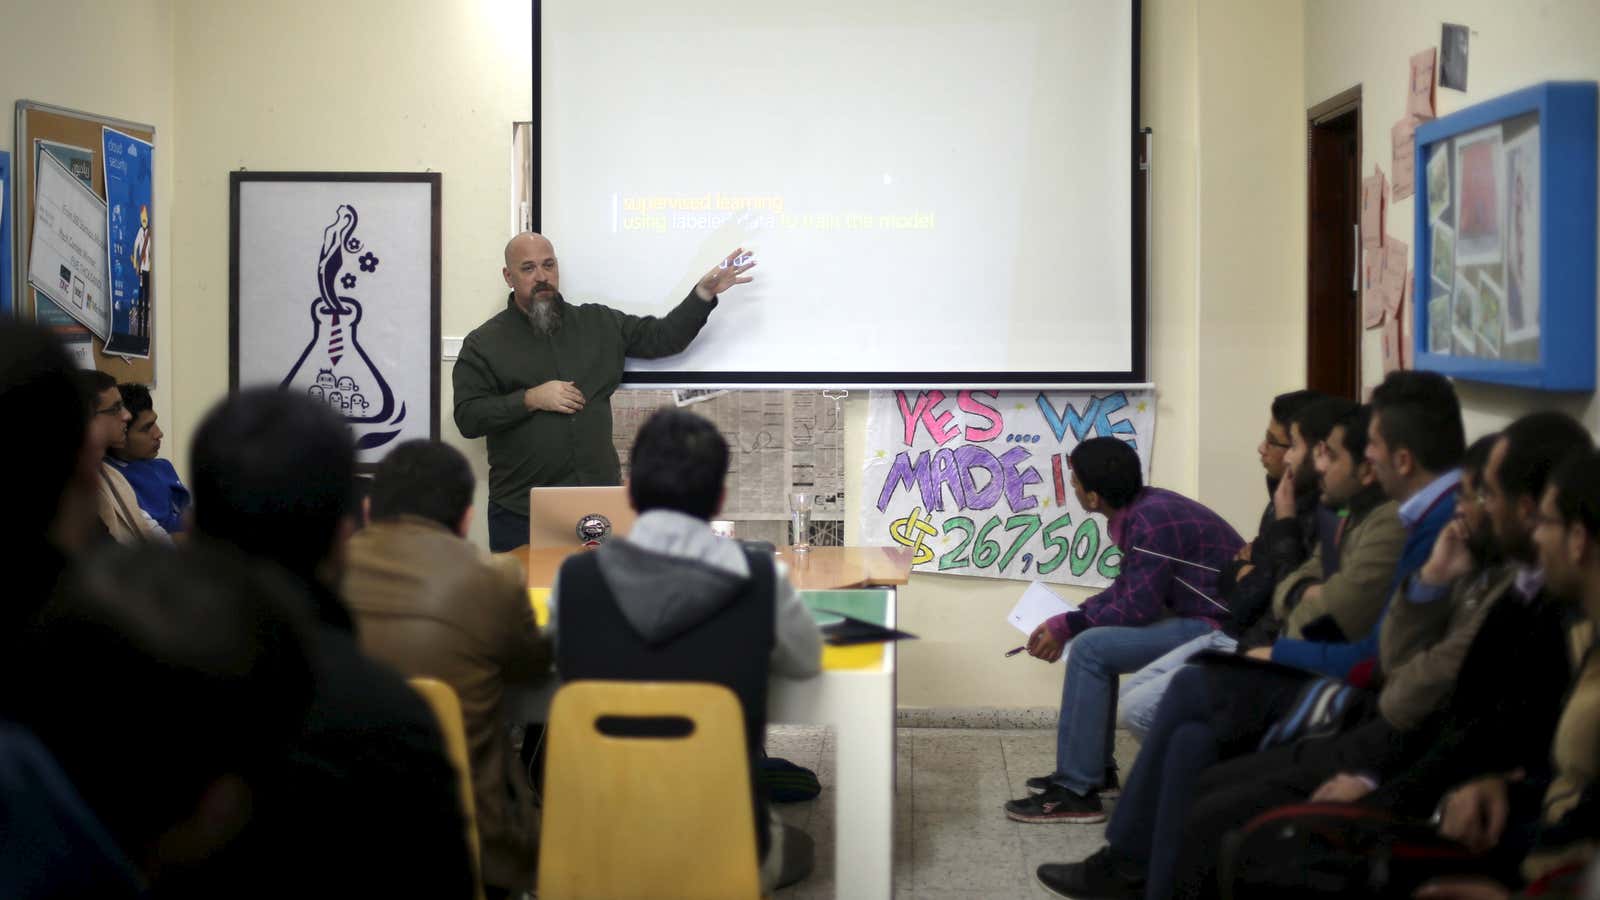 A visiting Microsoft employee gives a talk at Gaza Sky Geeks.